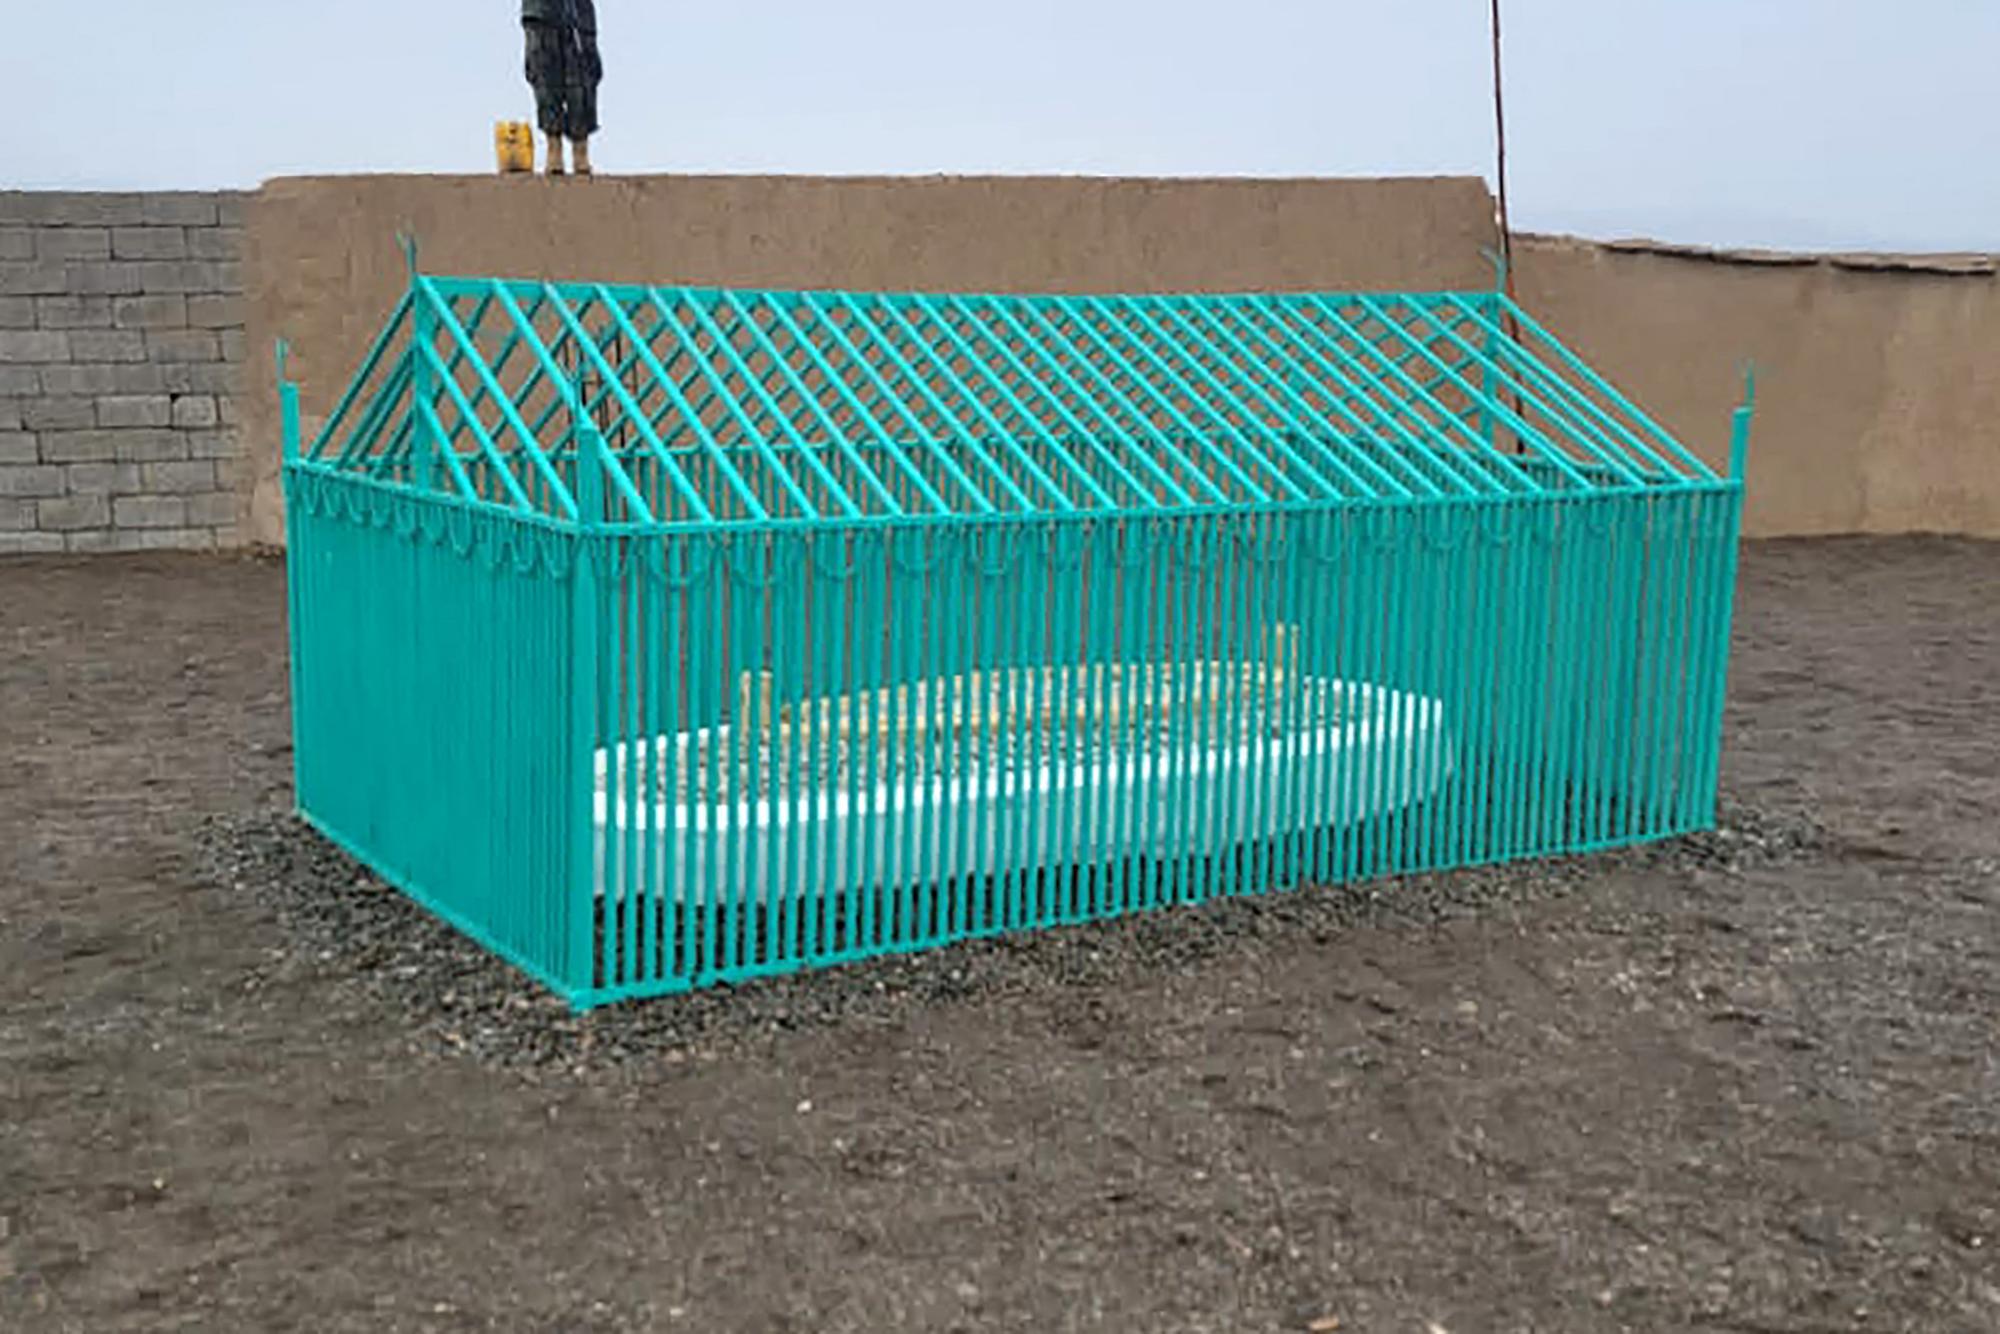 La tombe est protégée par une cage de métal. [Gouvernement taliban/AFP - -]